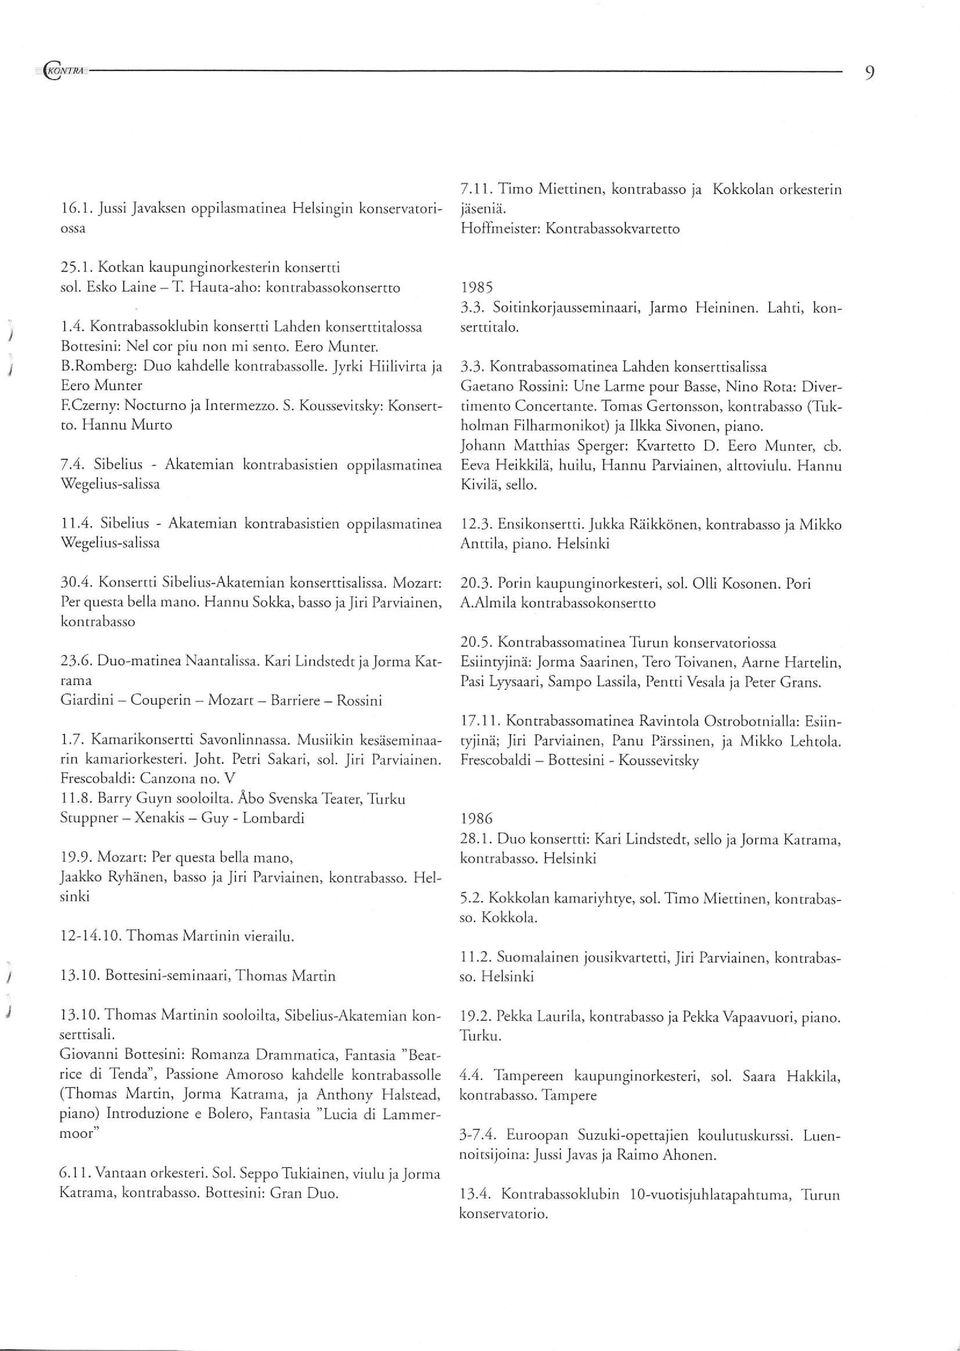 Jyrki Hiilivirta ja Eero Munter F.Czerny: Nocturno ja Intermezzo. S. Koussevitsky: Konsertto. Hannu Murto 7.4. Sibelius - Akatemian kontrabasistien oppilasmatinea Wegelius-salissa 1985 3.